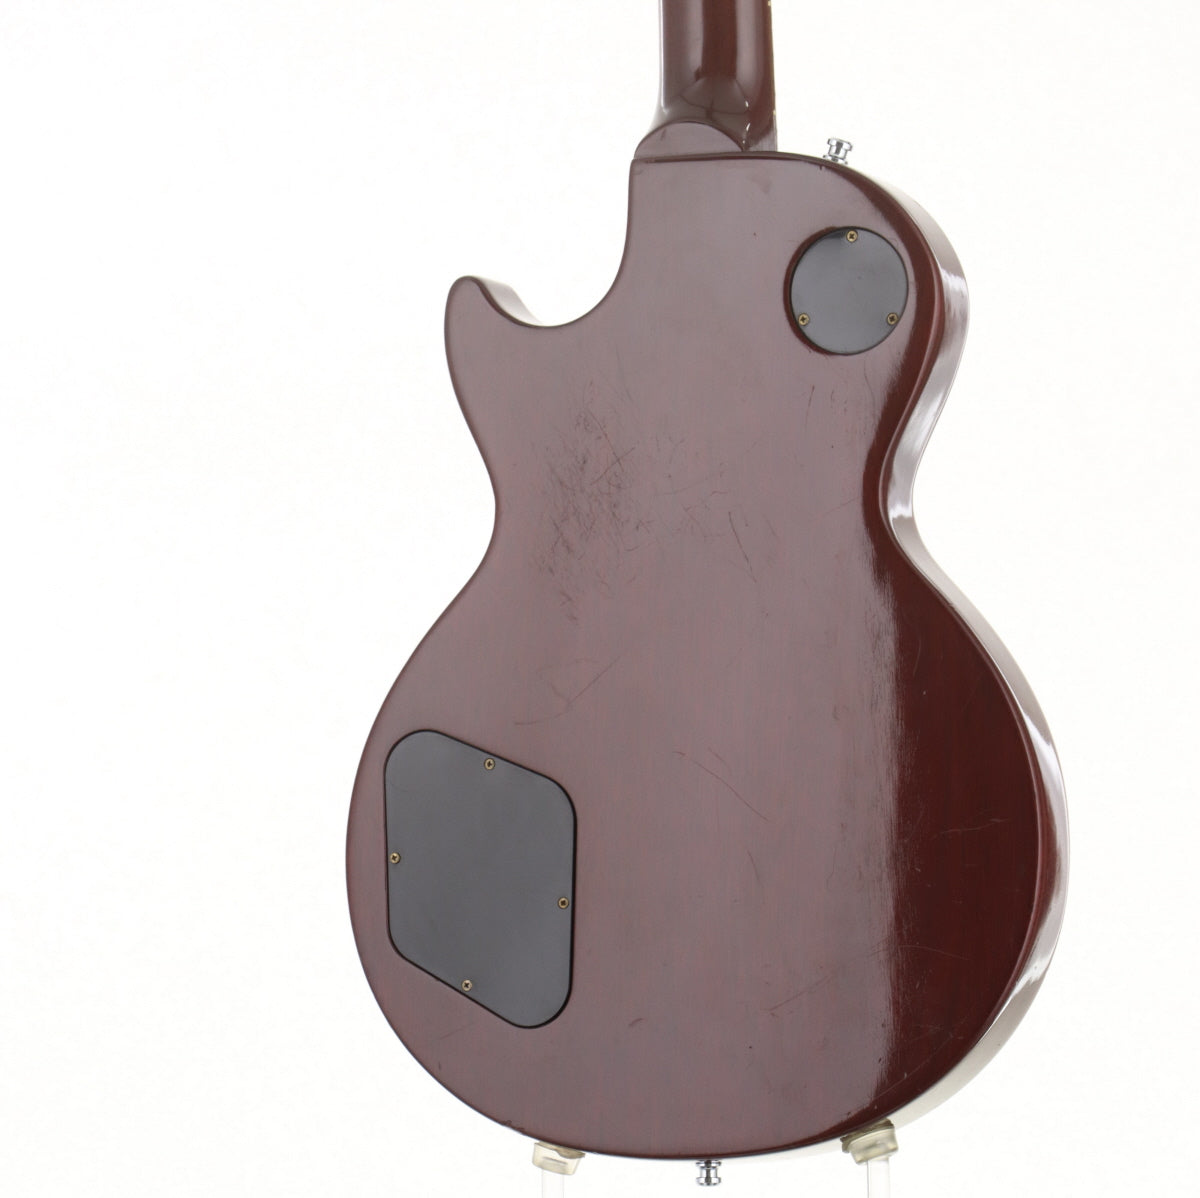 [SN 92569419] USED Gibson USA / Les Paul Studio Dish Inla Electric Guitar [10]